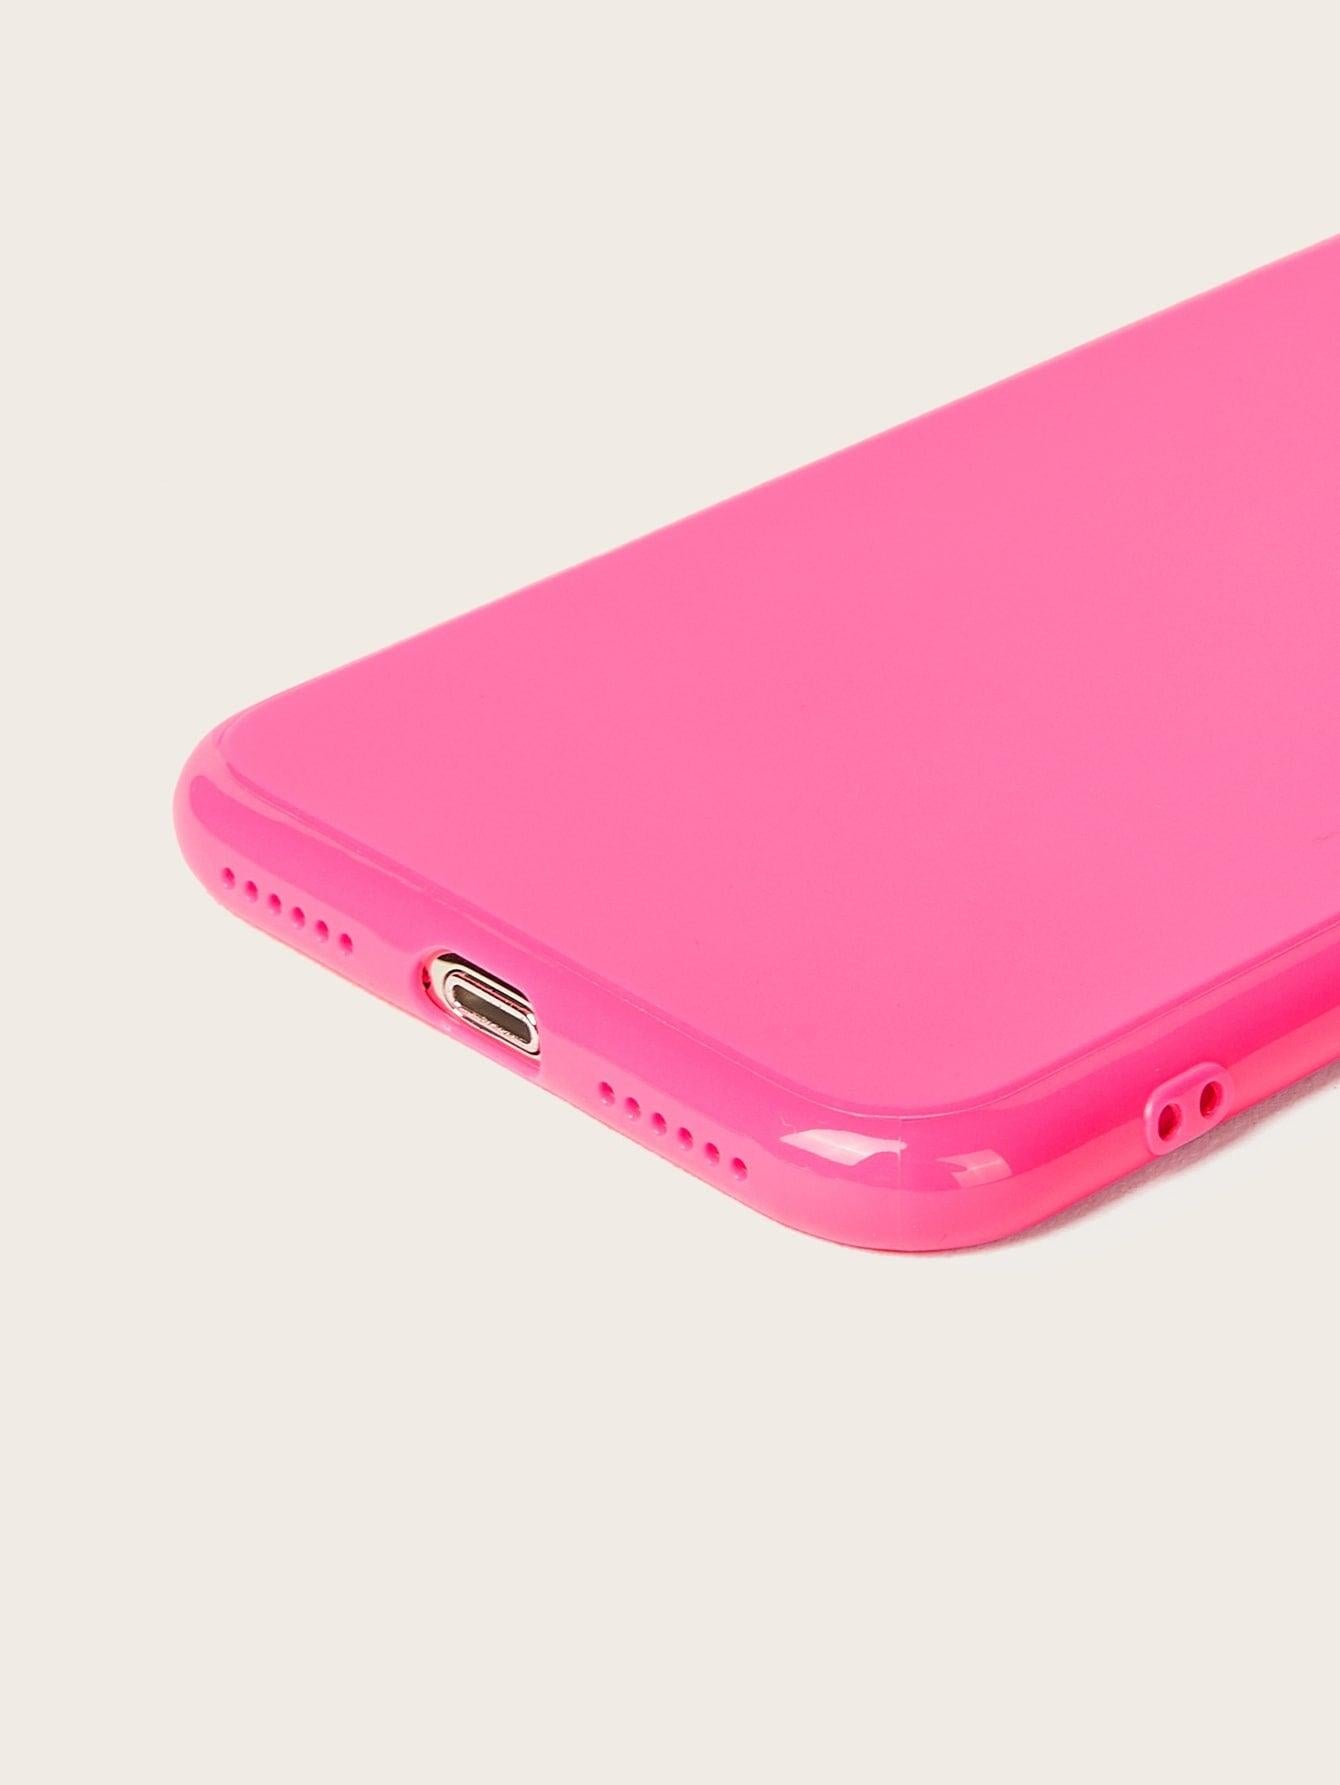 Hot Neon Color iPhone Case - Mint Leafe Boutique 